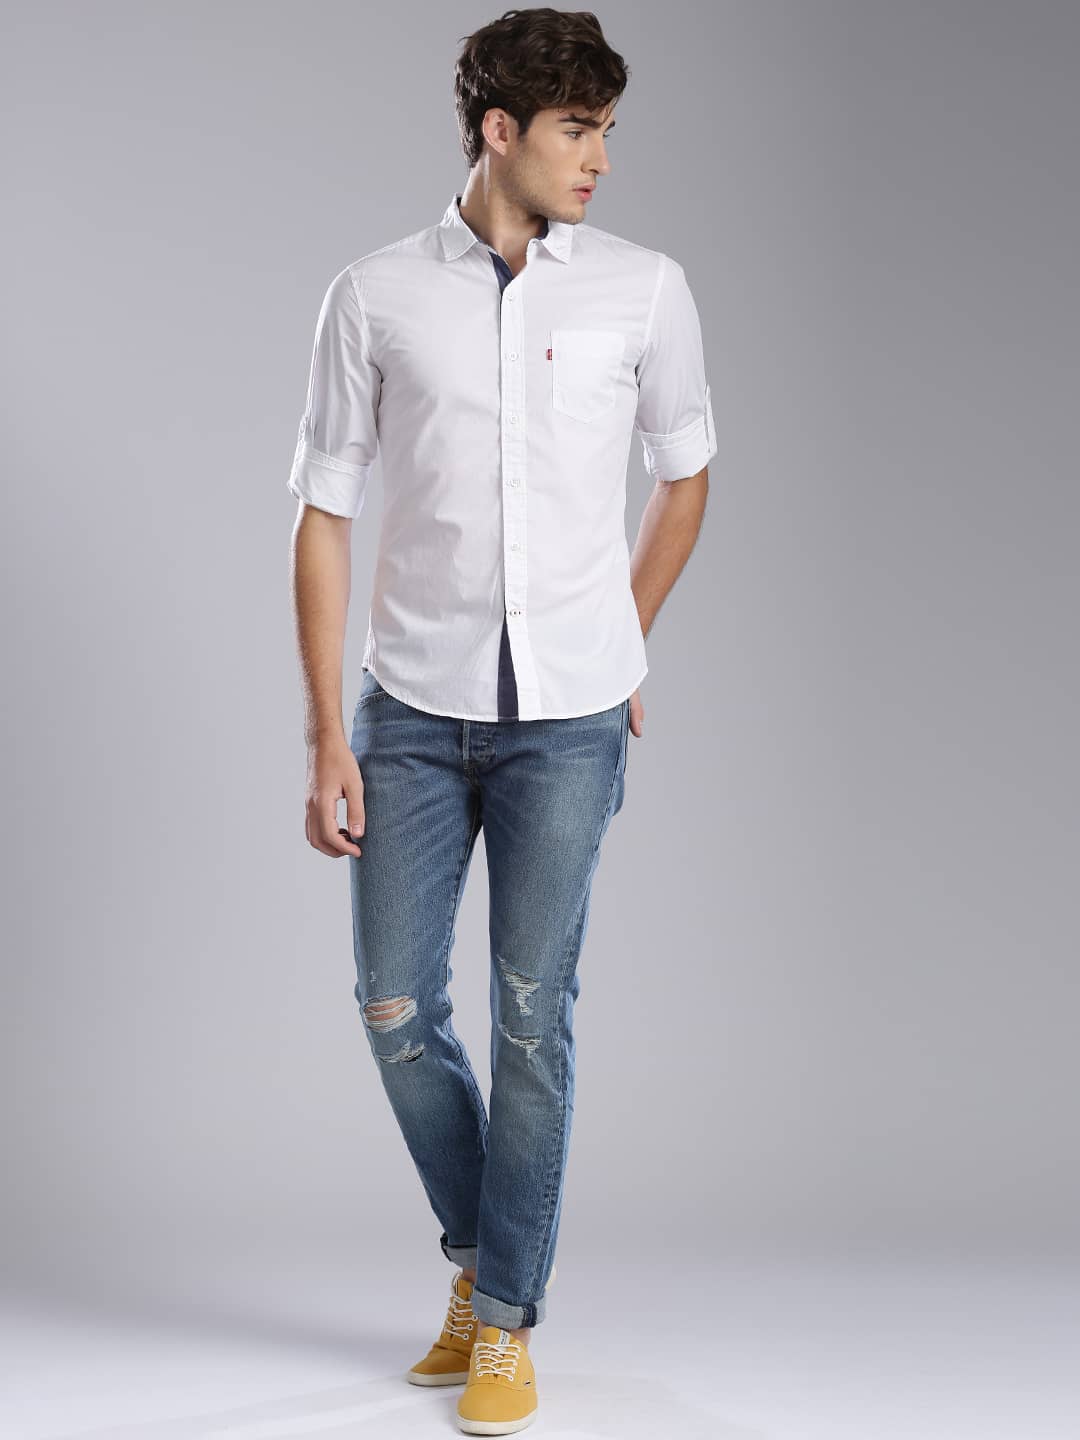 Male Model wearing Mid Rise jeans